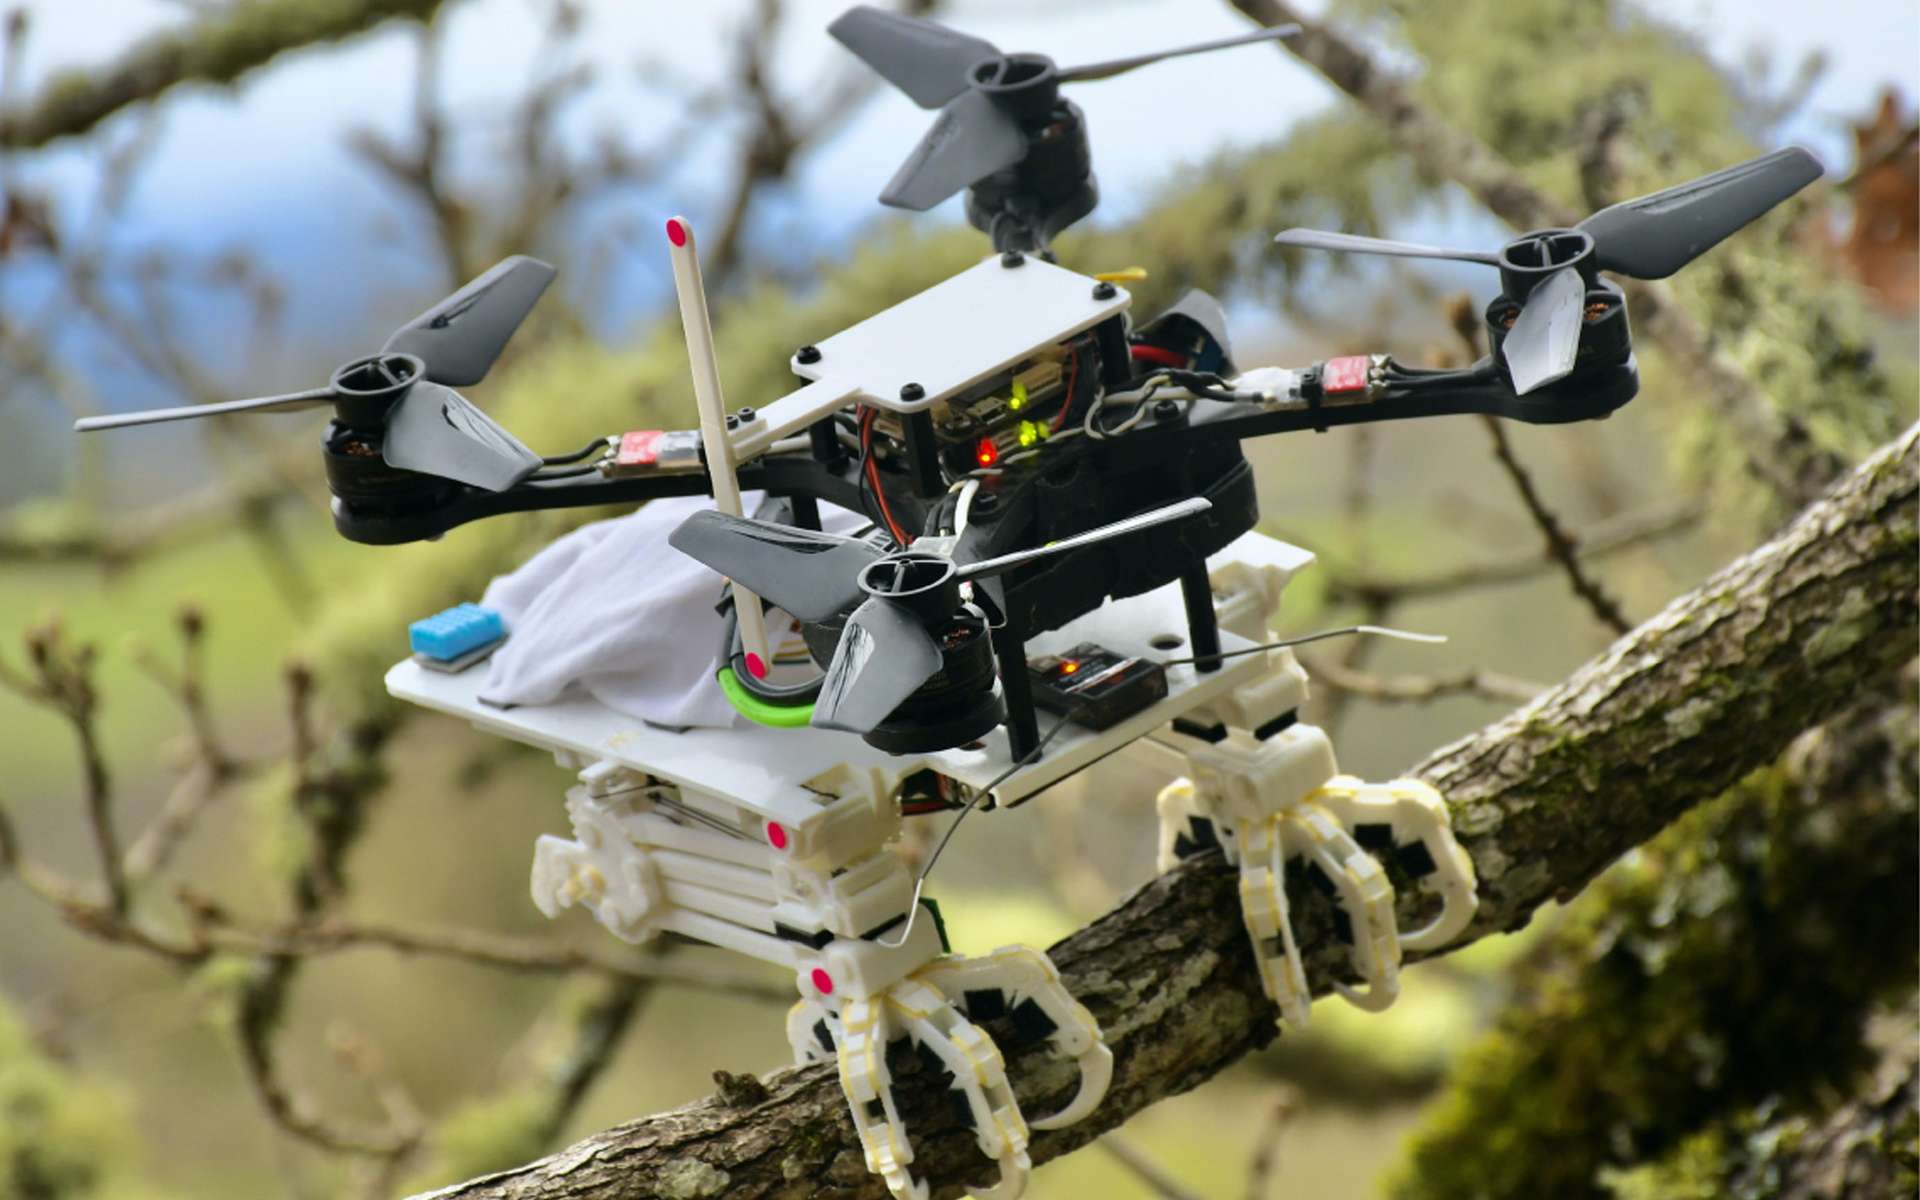 Les pattes imprimées en 3D ajoutées à ce drone lui permettent de se poser sur les branches d’arbres. © Université de Stanford